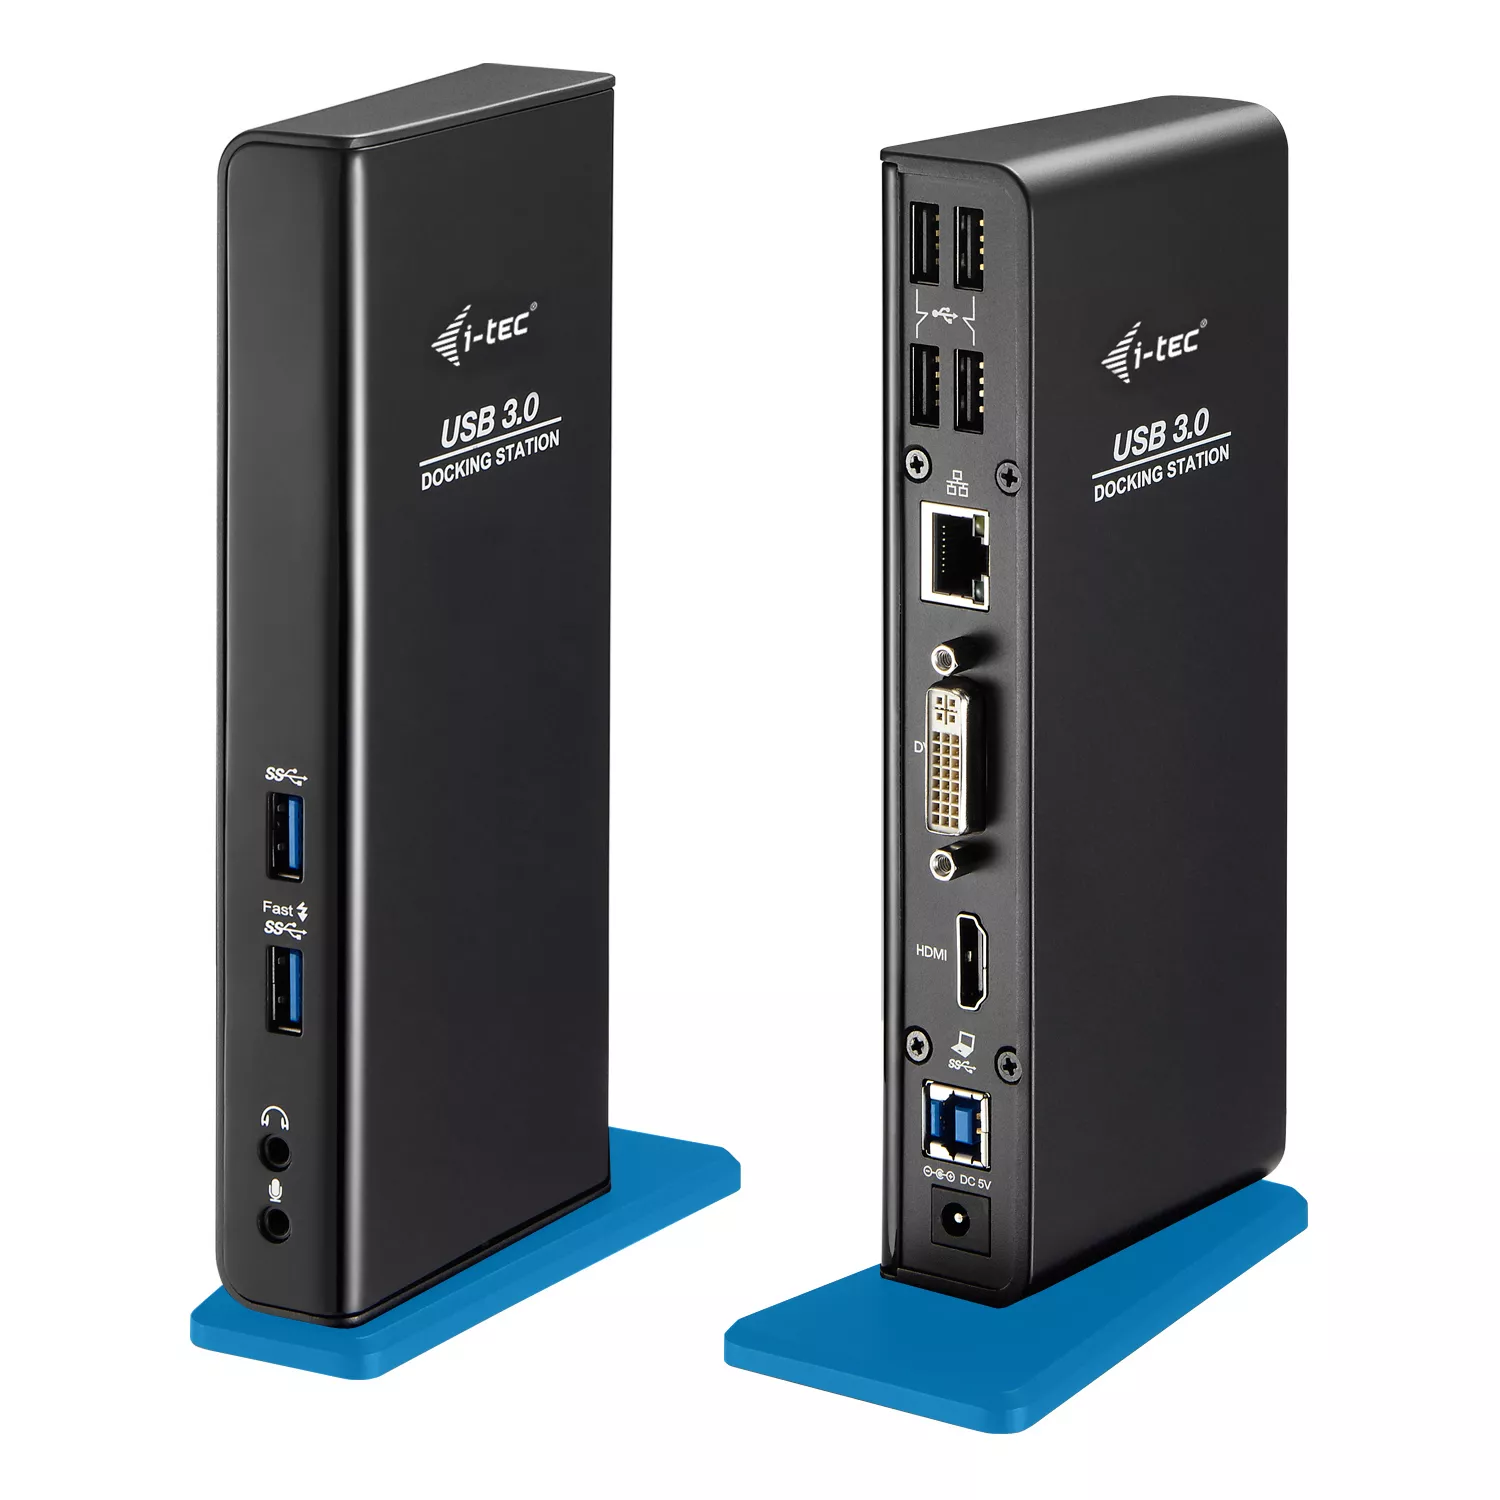 Revendeur officiel Station d'accueil pour portable I-TEC USB 3.0 Dual Docking Station 1xDVI 1xHDMI